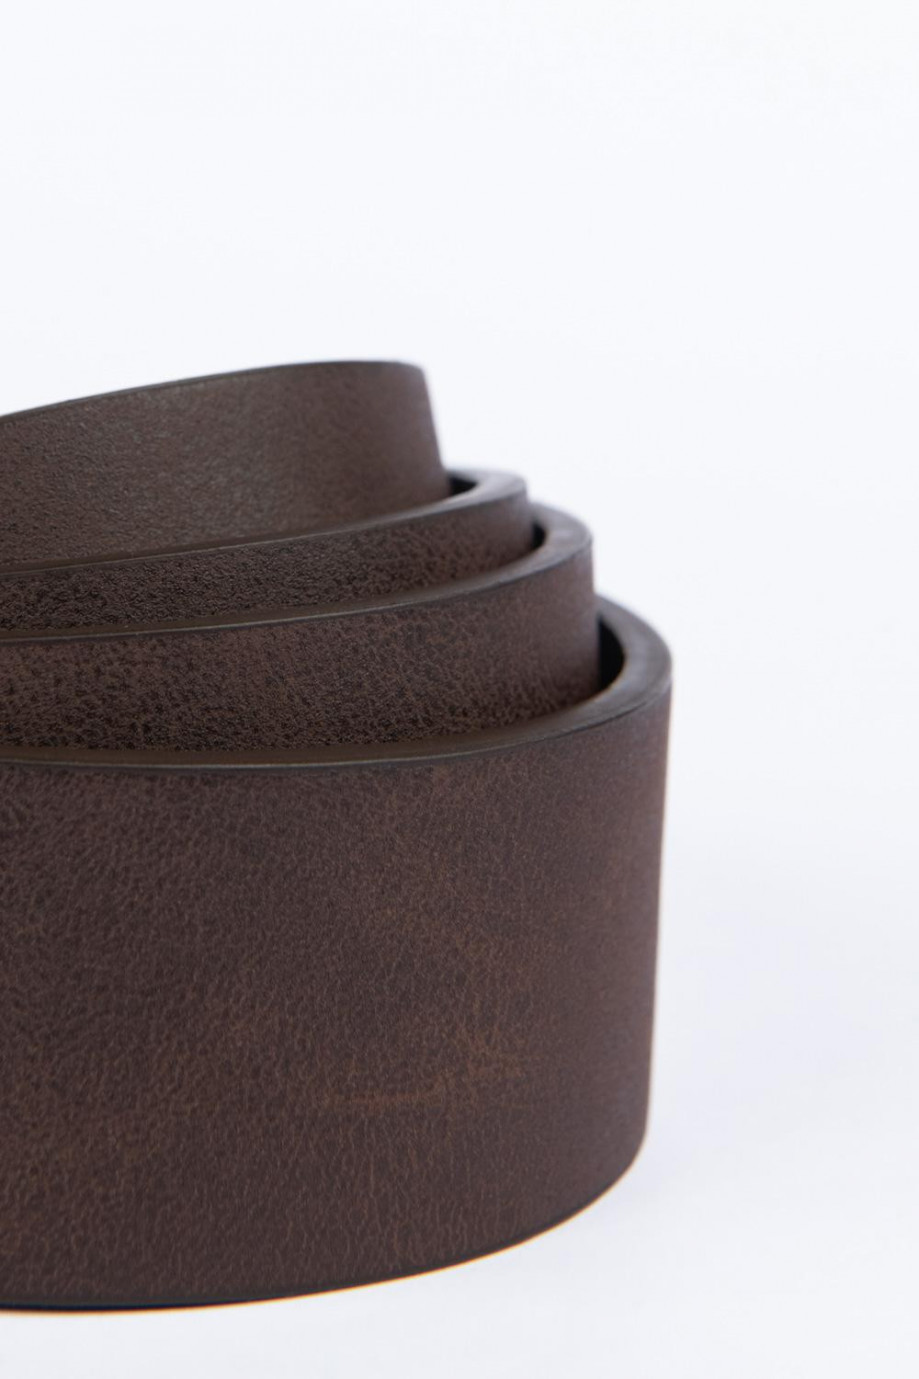 Cinturón café oscuro con textura lisa y hebilla cuadrada